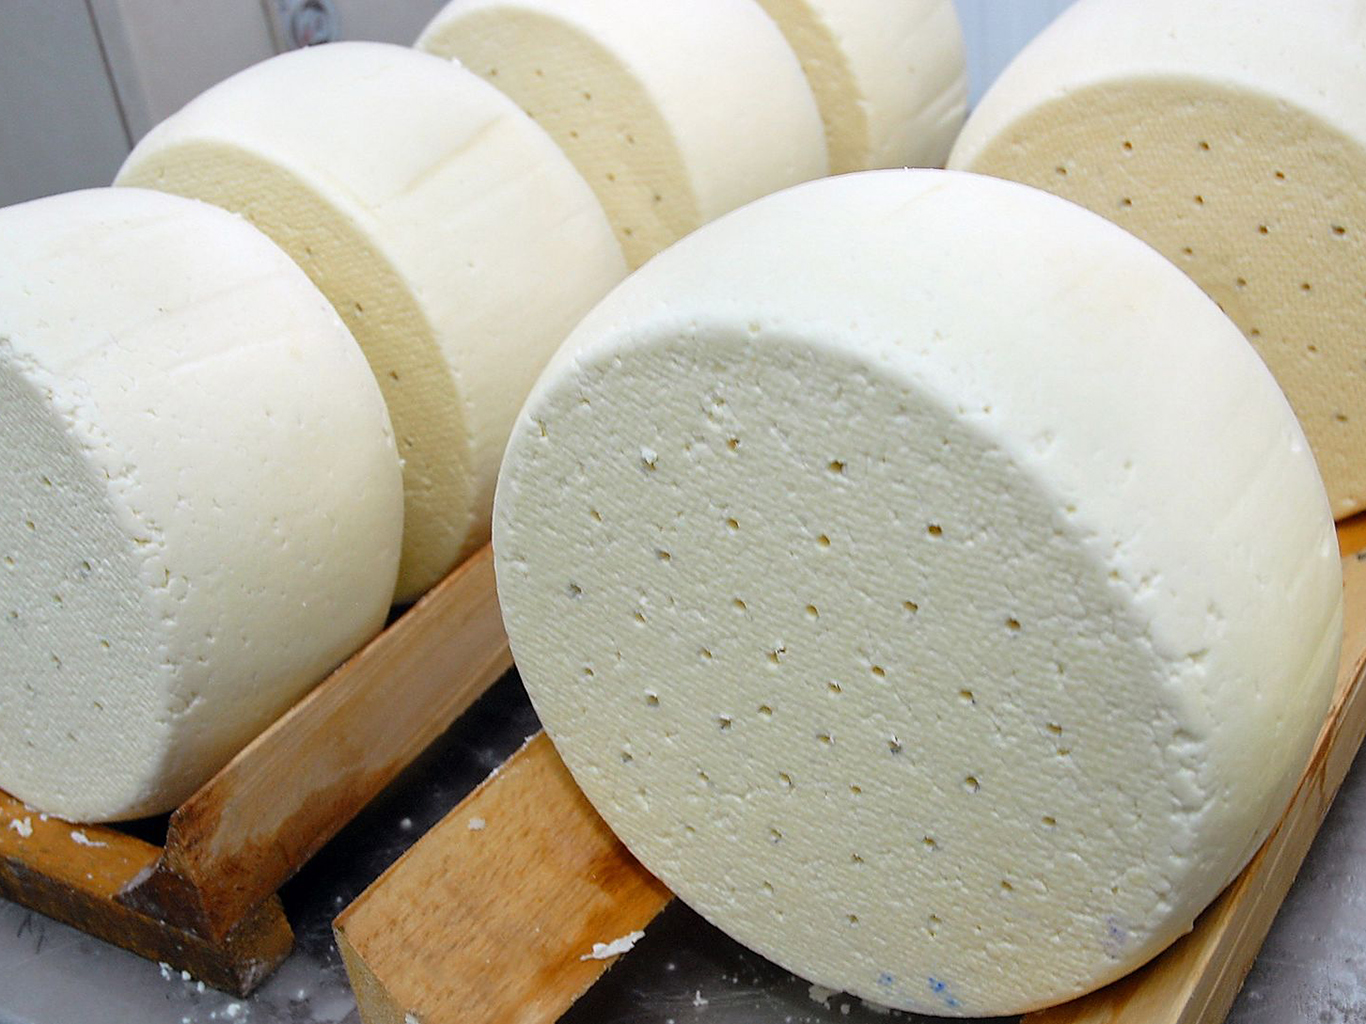 Sýr lori se naloží do slaného nálevu a je celkem dvakrát zahříván